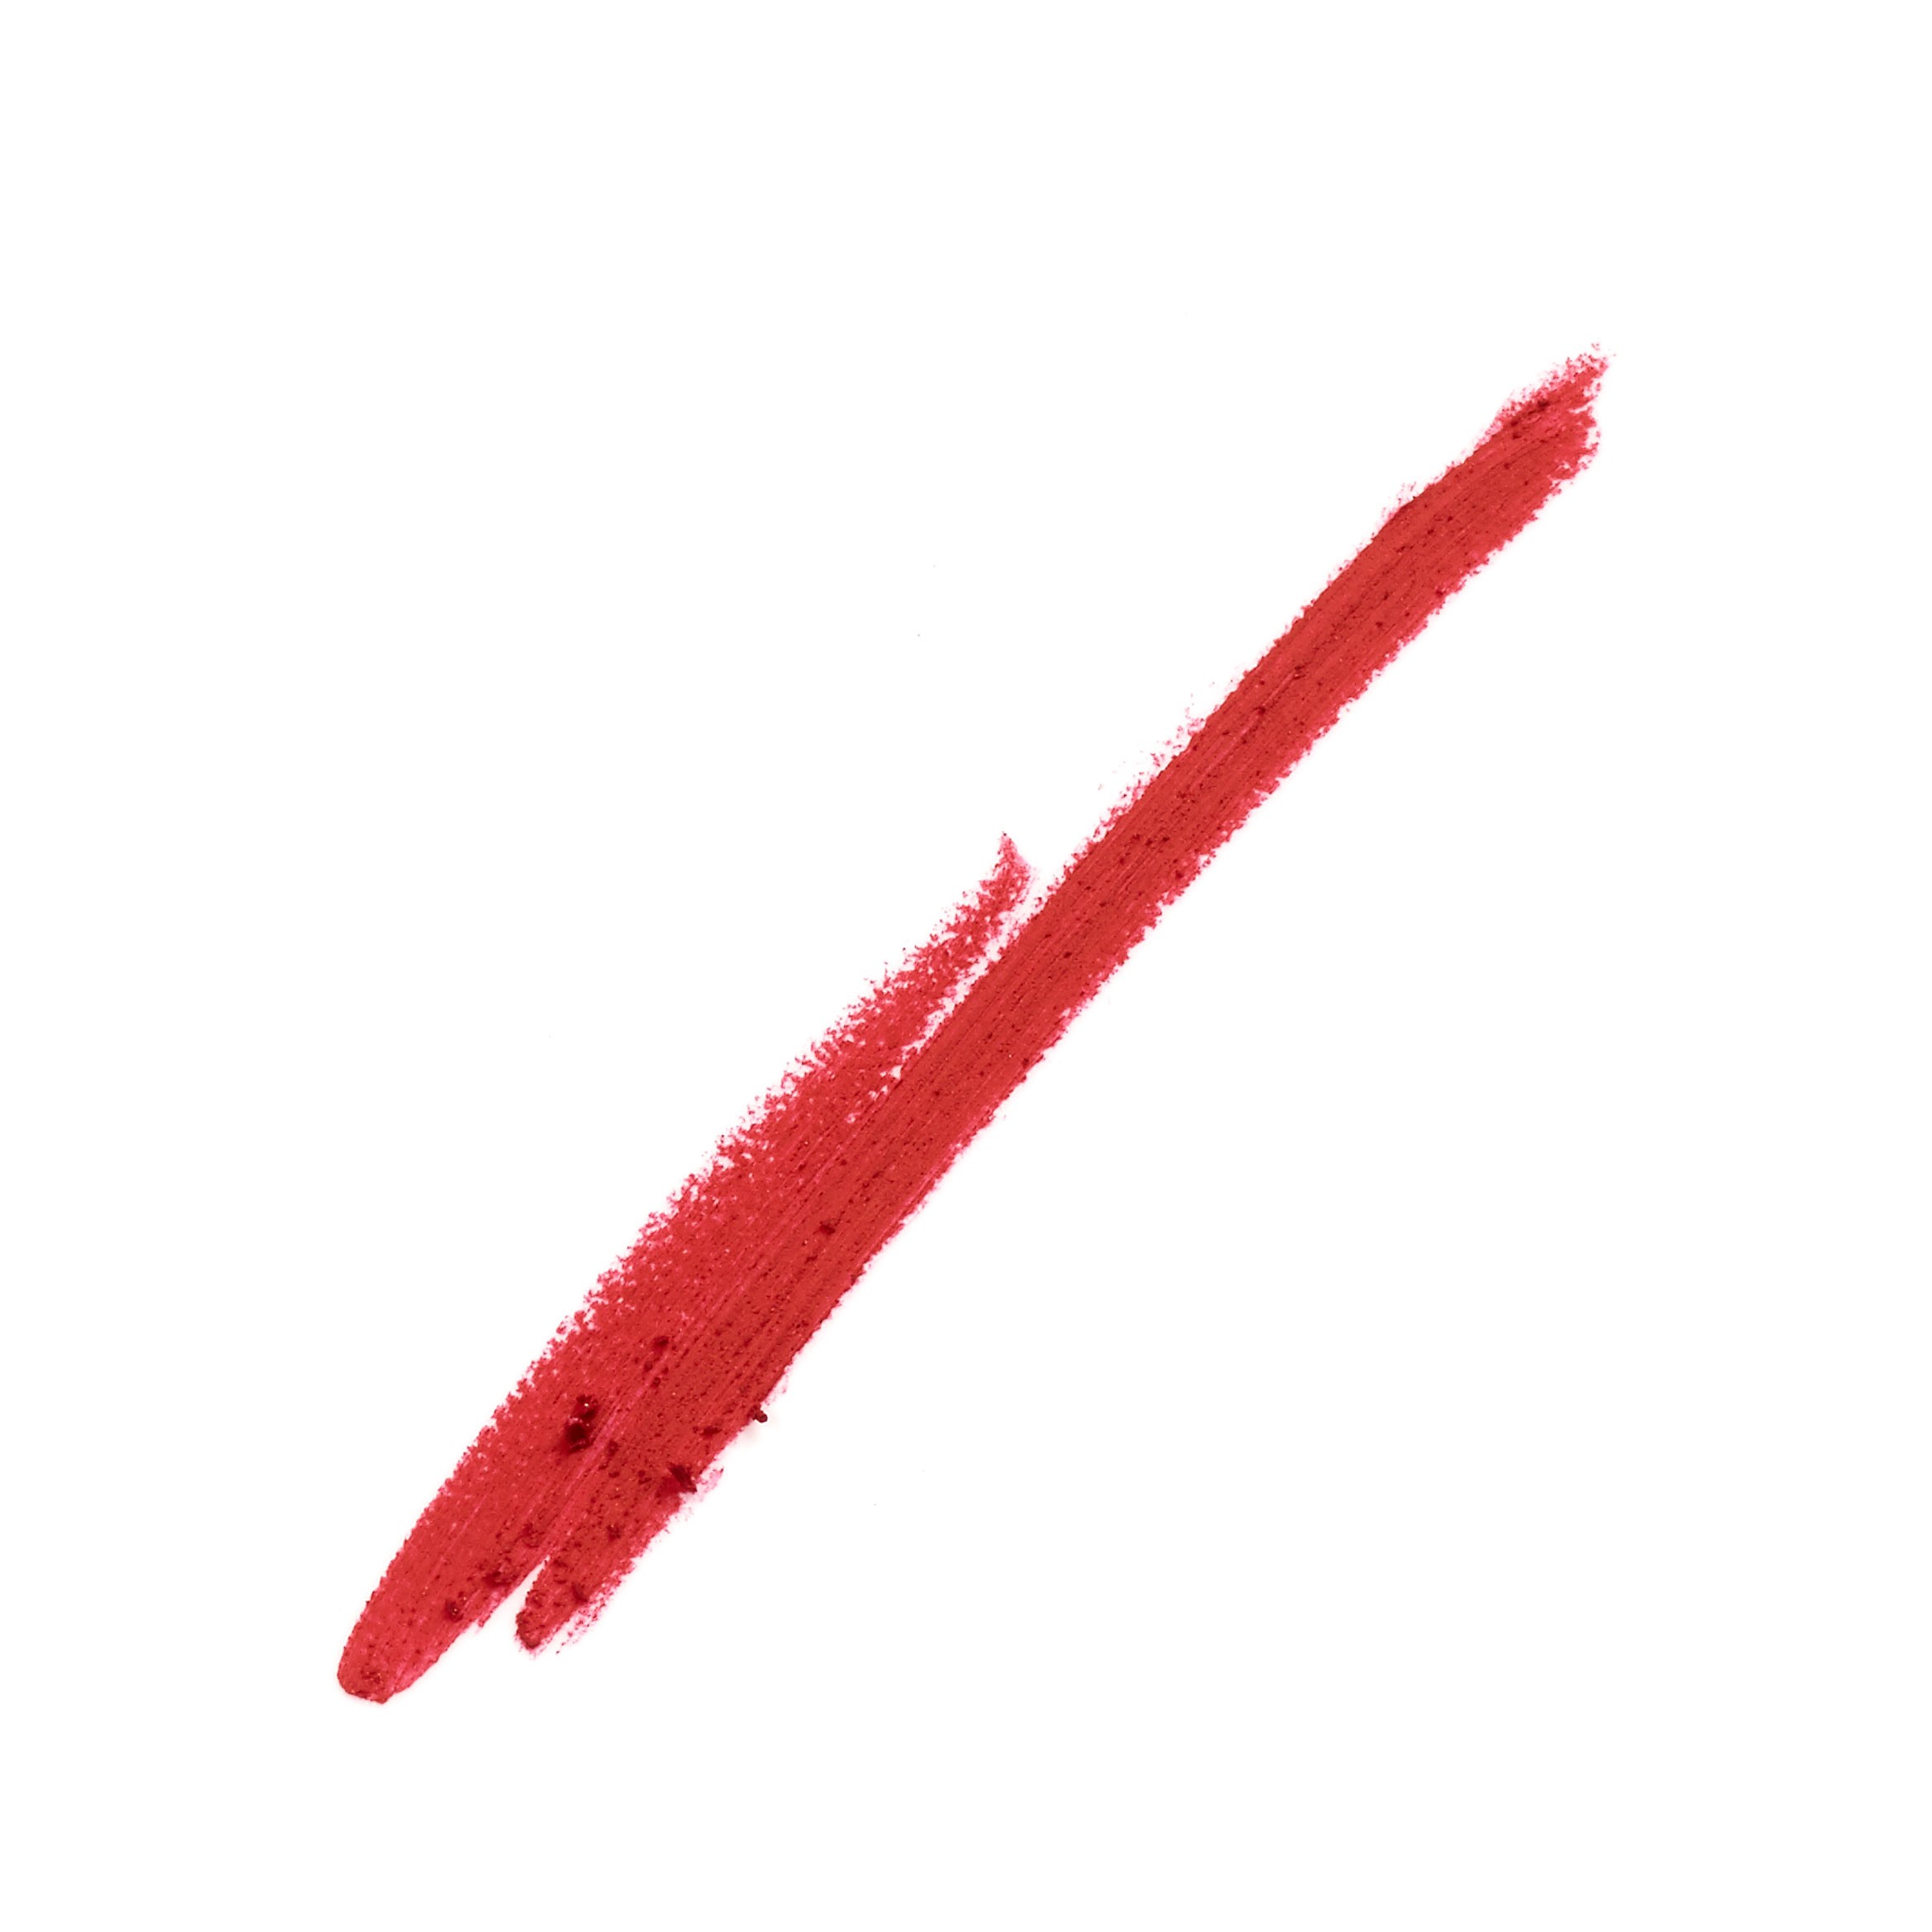 Crayon à Lèvres - Color Sensational Shaping Lipliner 